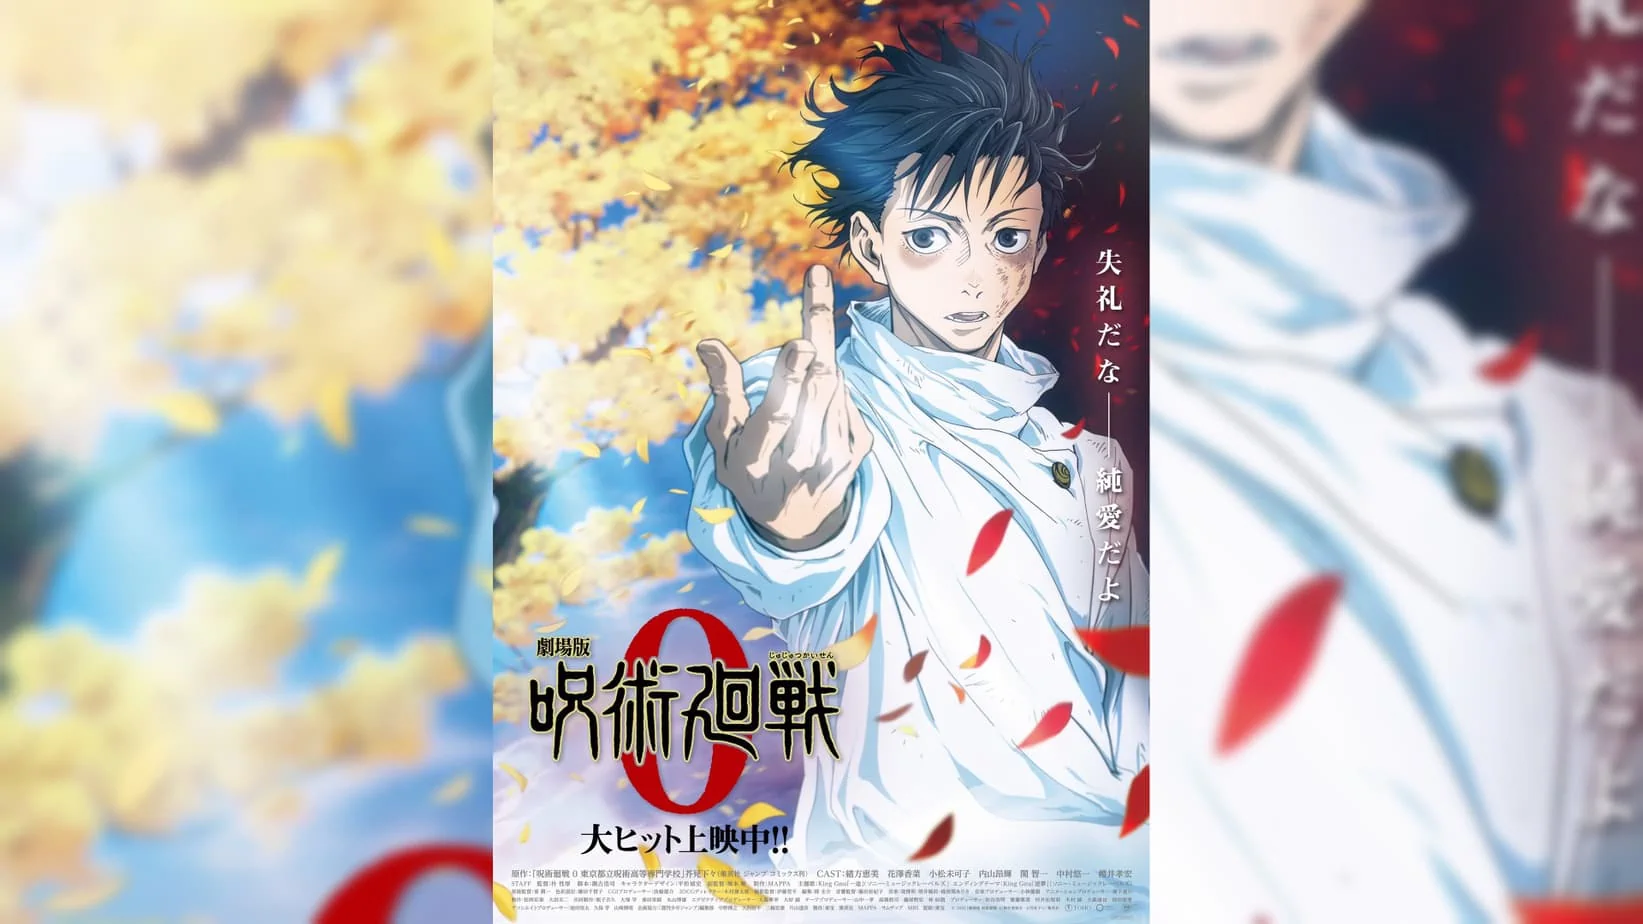 Jujutsu Kaisen 0 fechas de estreno y póster de la película